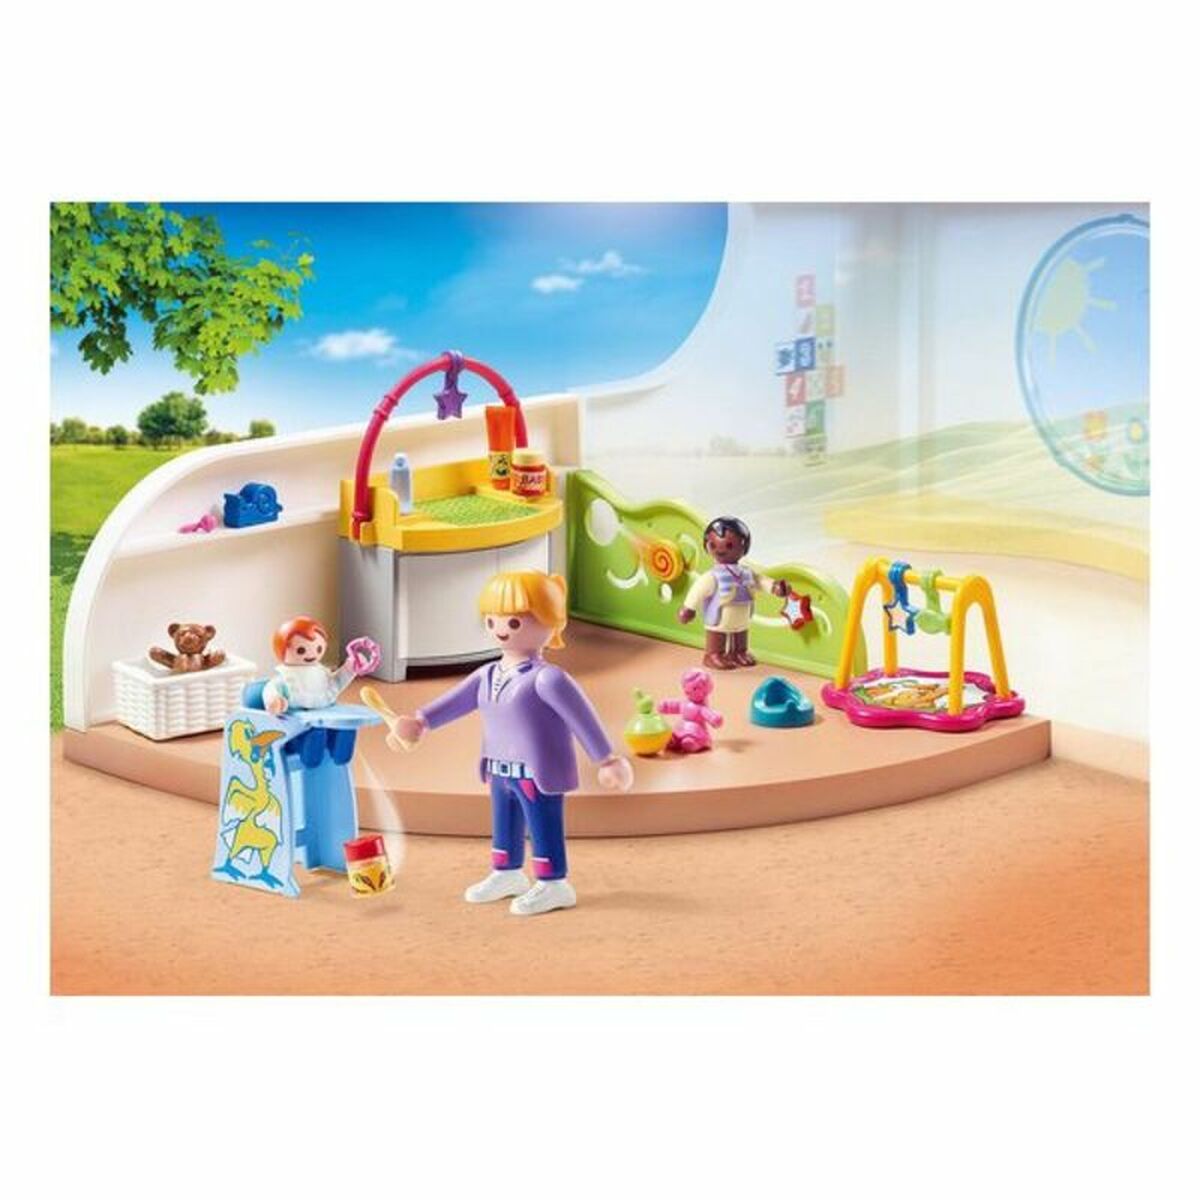 Playset City Life Baby Room Playmobil 70282 (40 pcs)-Leksaker och spel, Dockor och actionfigurer-Playmobil-peaceofhome.se